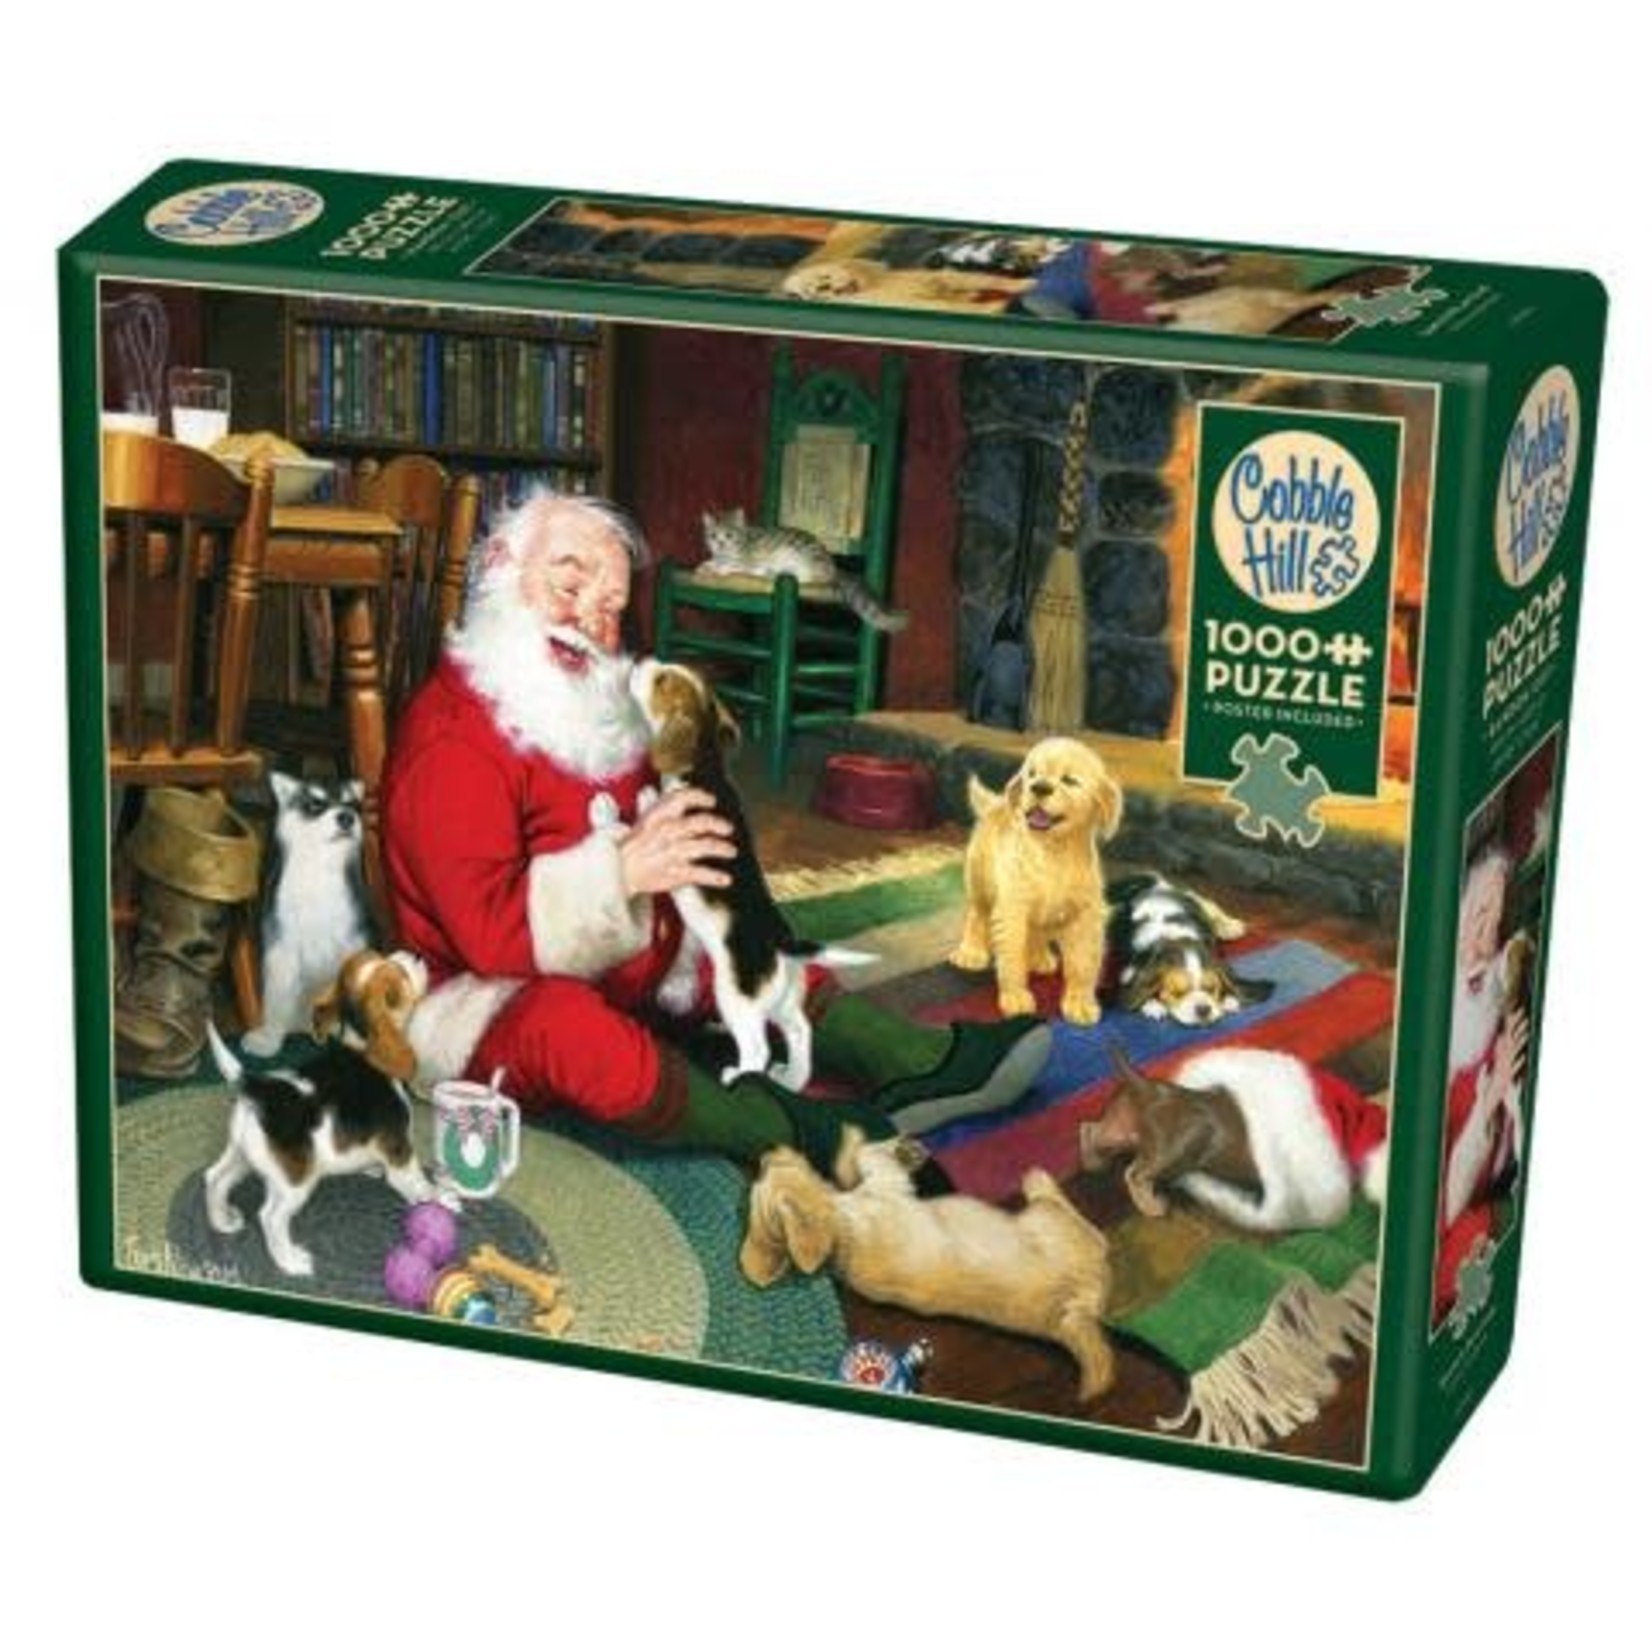 Cobble Hill Santa's Playtime Puzzle 1000 piece